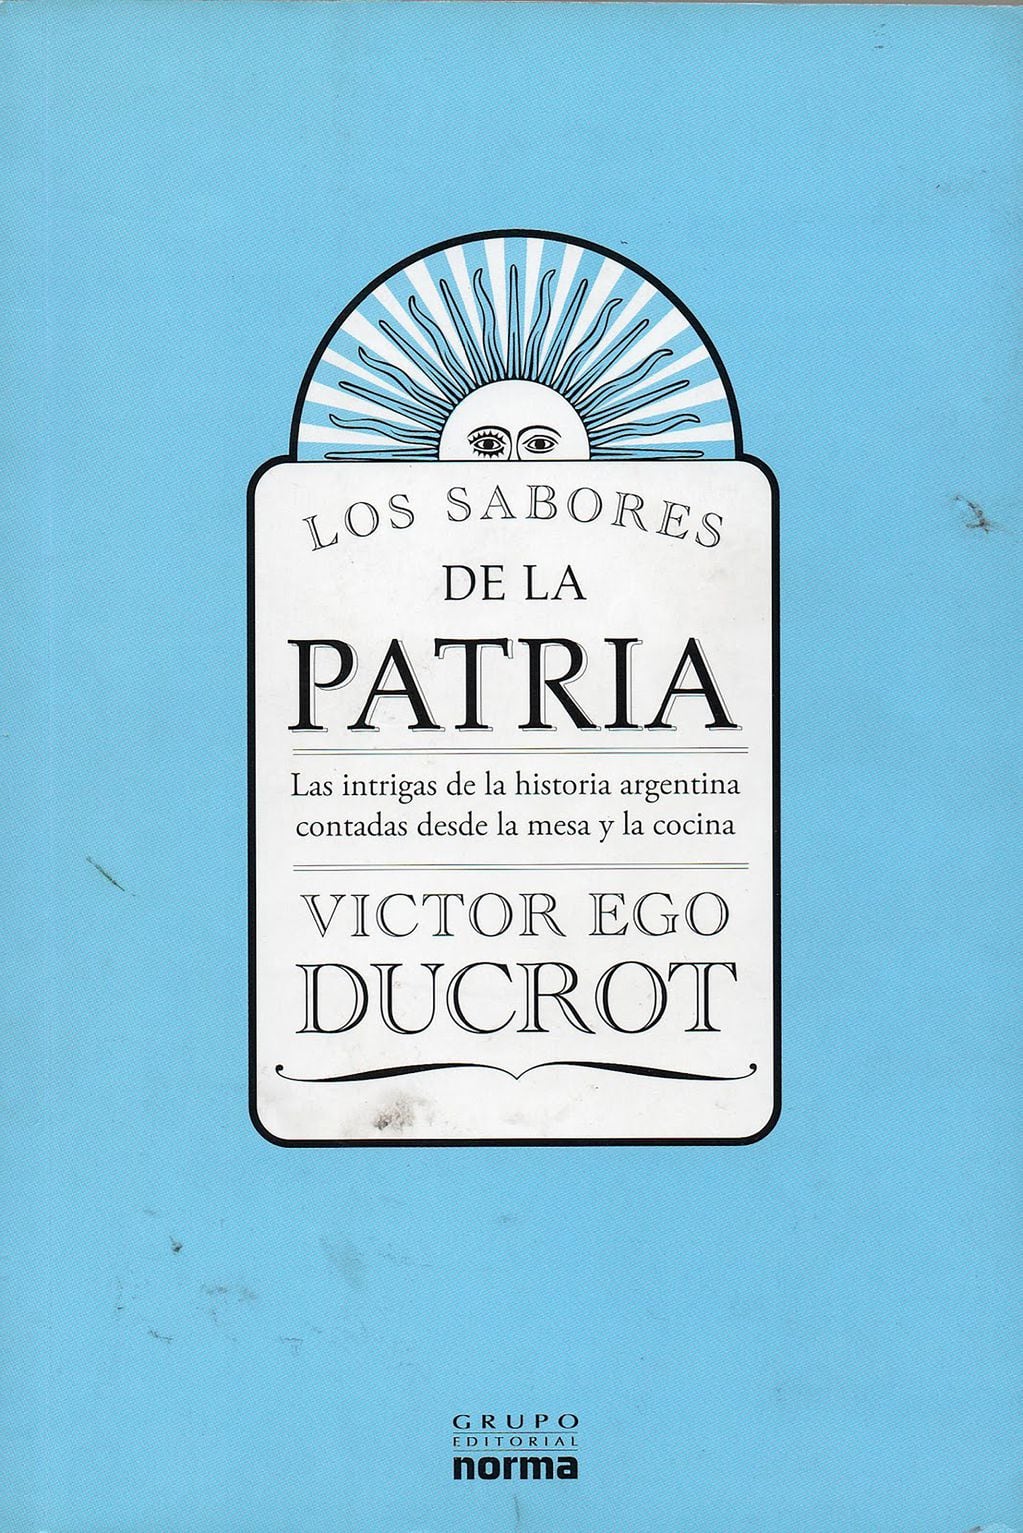 En Los sabores de la patria, el periodista y cocinero  Víctor Ego Ducrot recorre las particularidades de la cocina argentina entre los siglos XIX y XX.